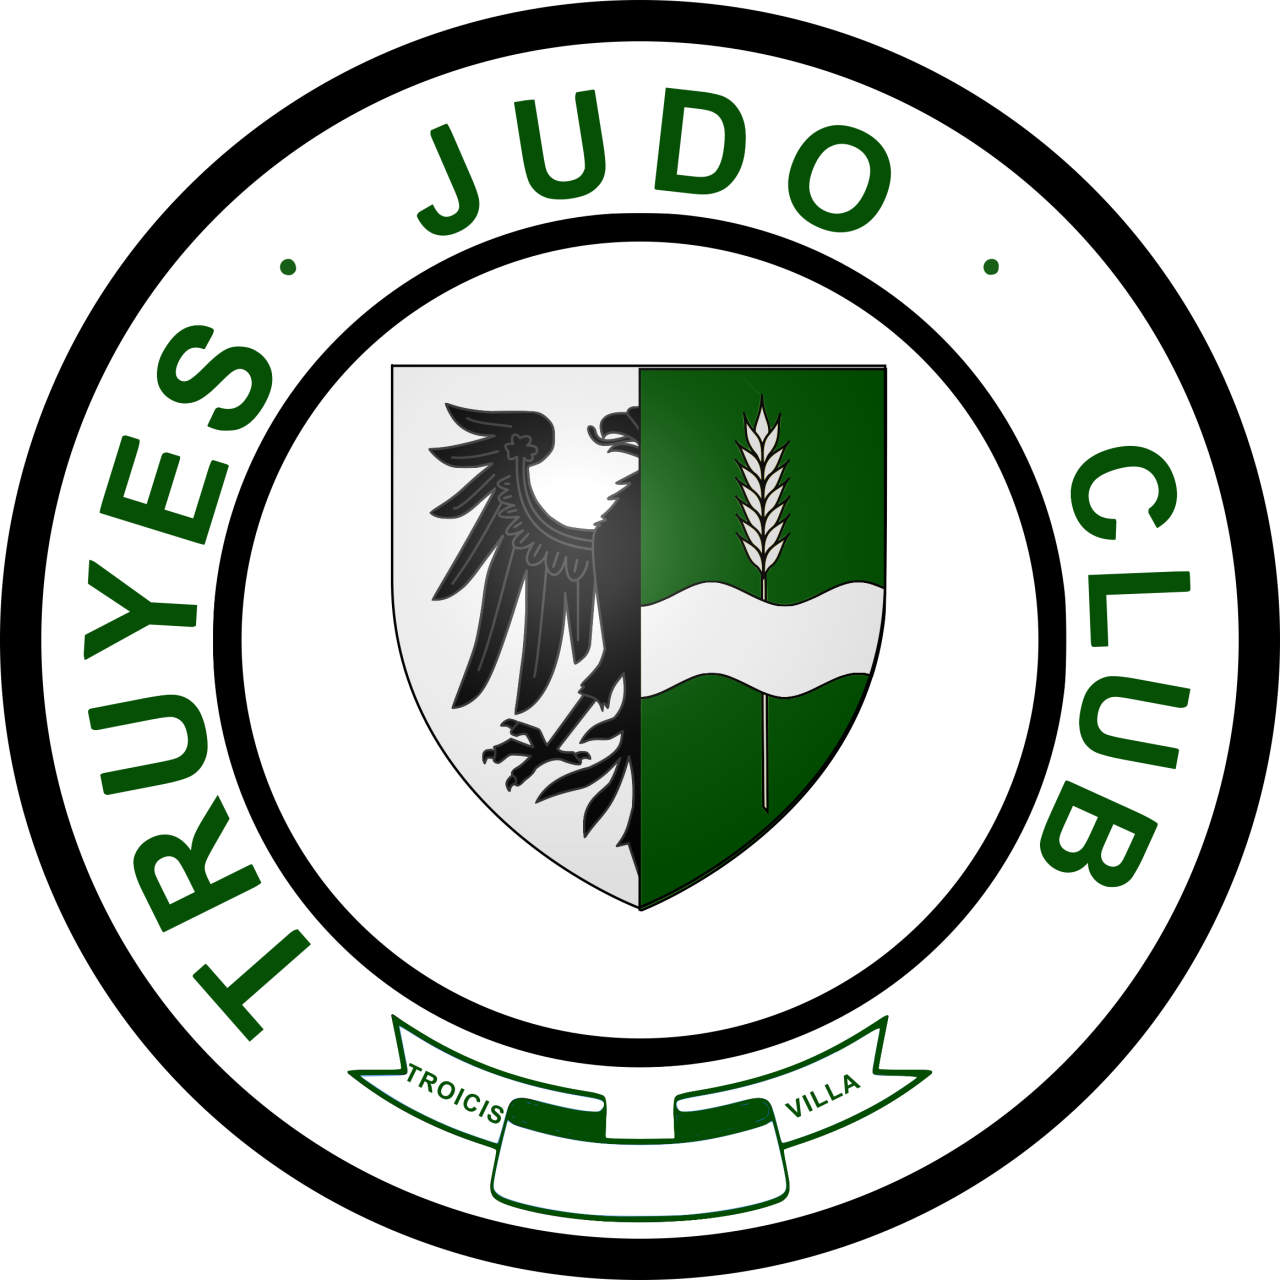 TRUYES JUDO CLUB